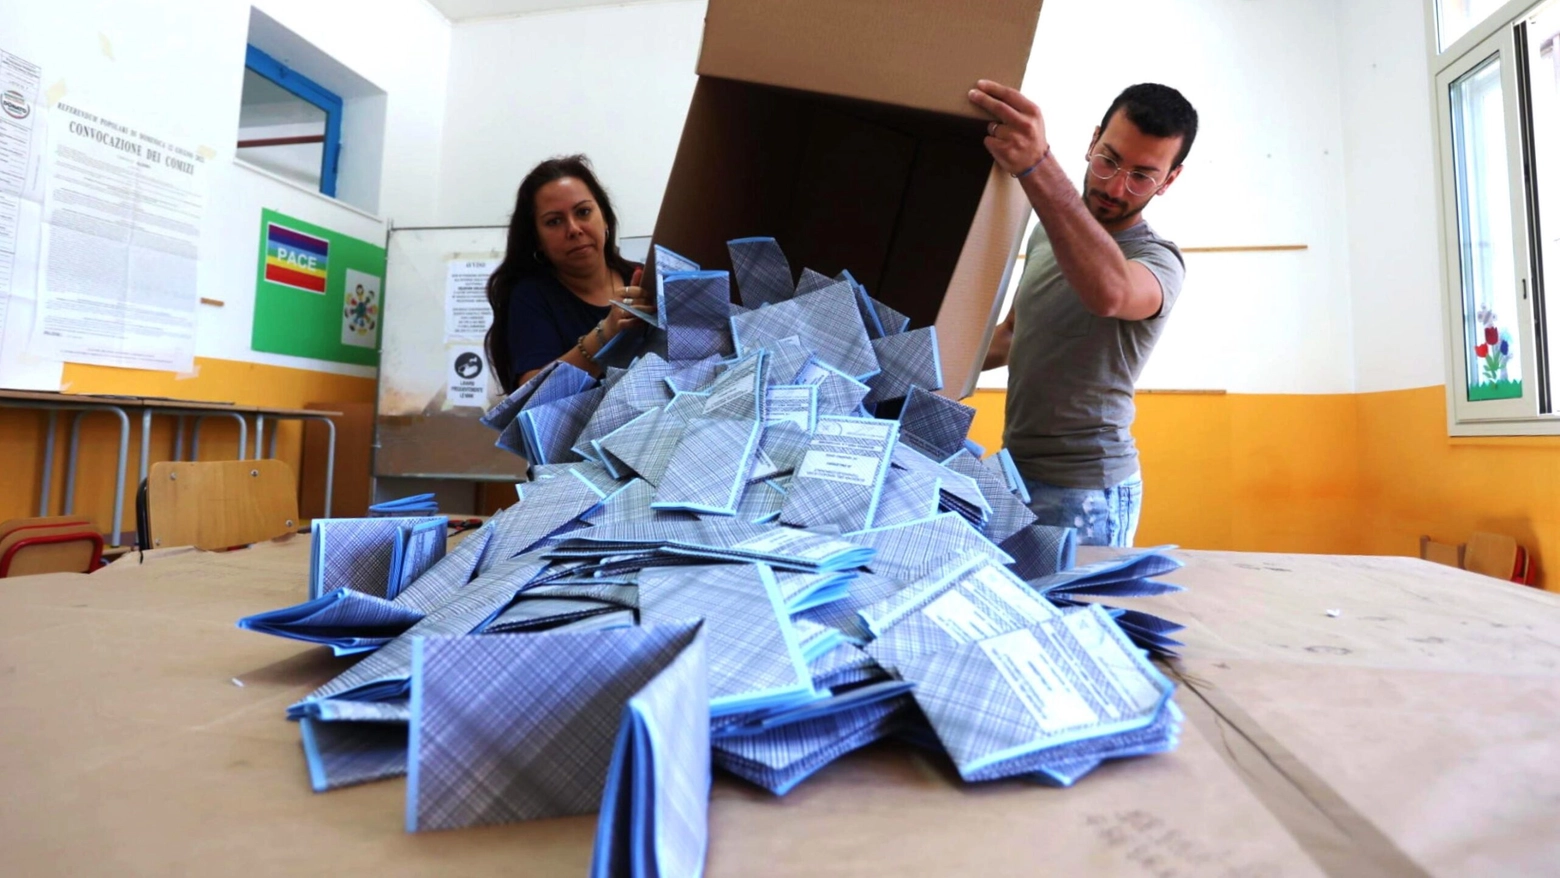 L'apertura delle urne con le schede blu per le elezioni amministrative